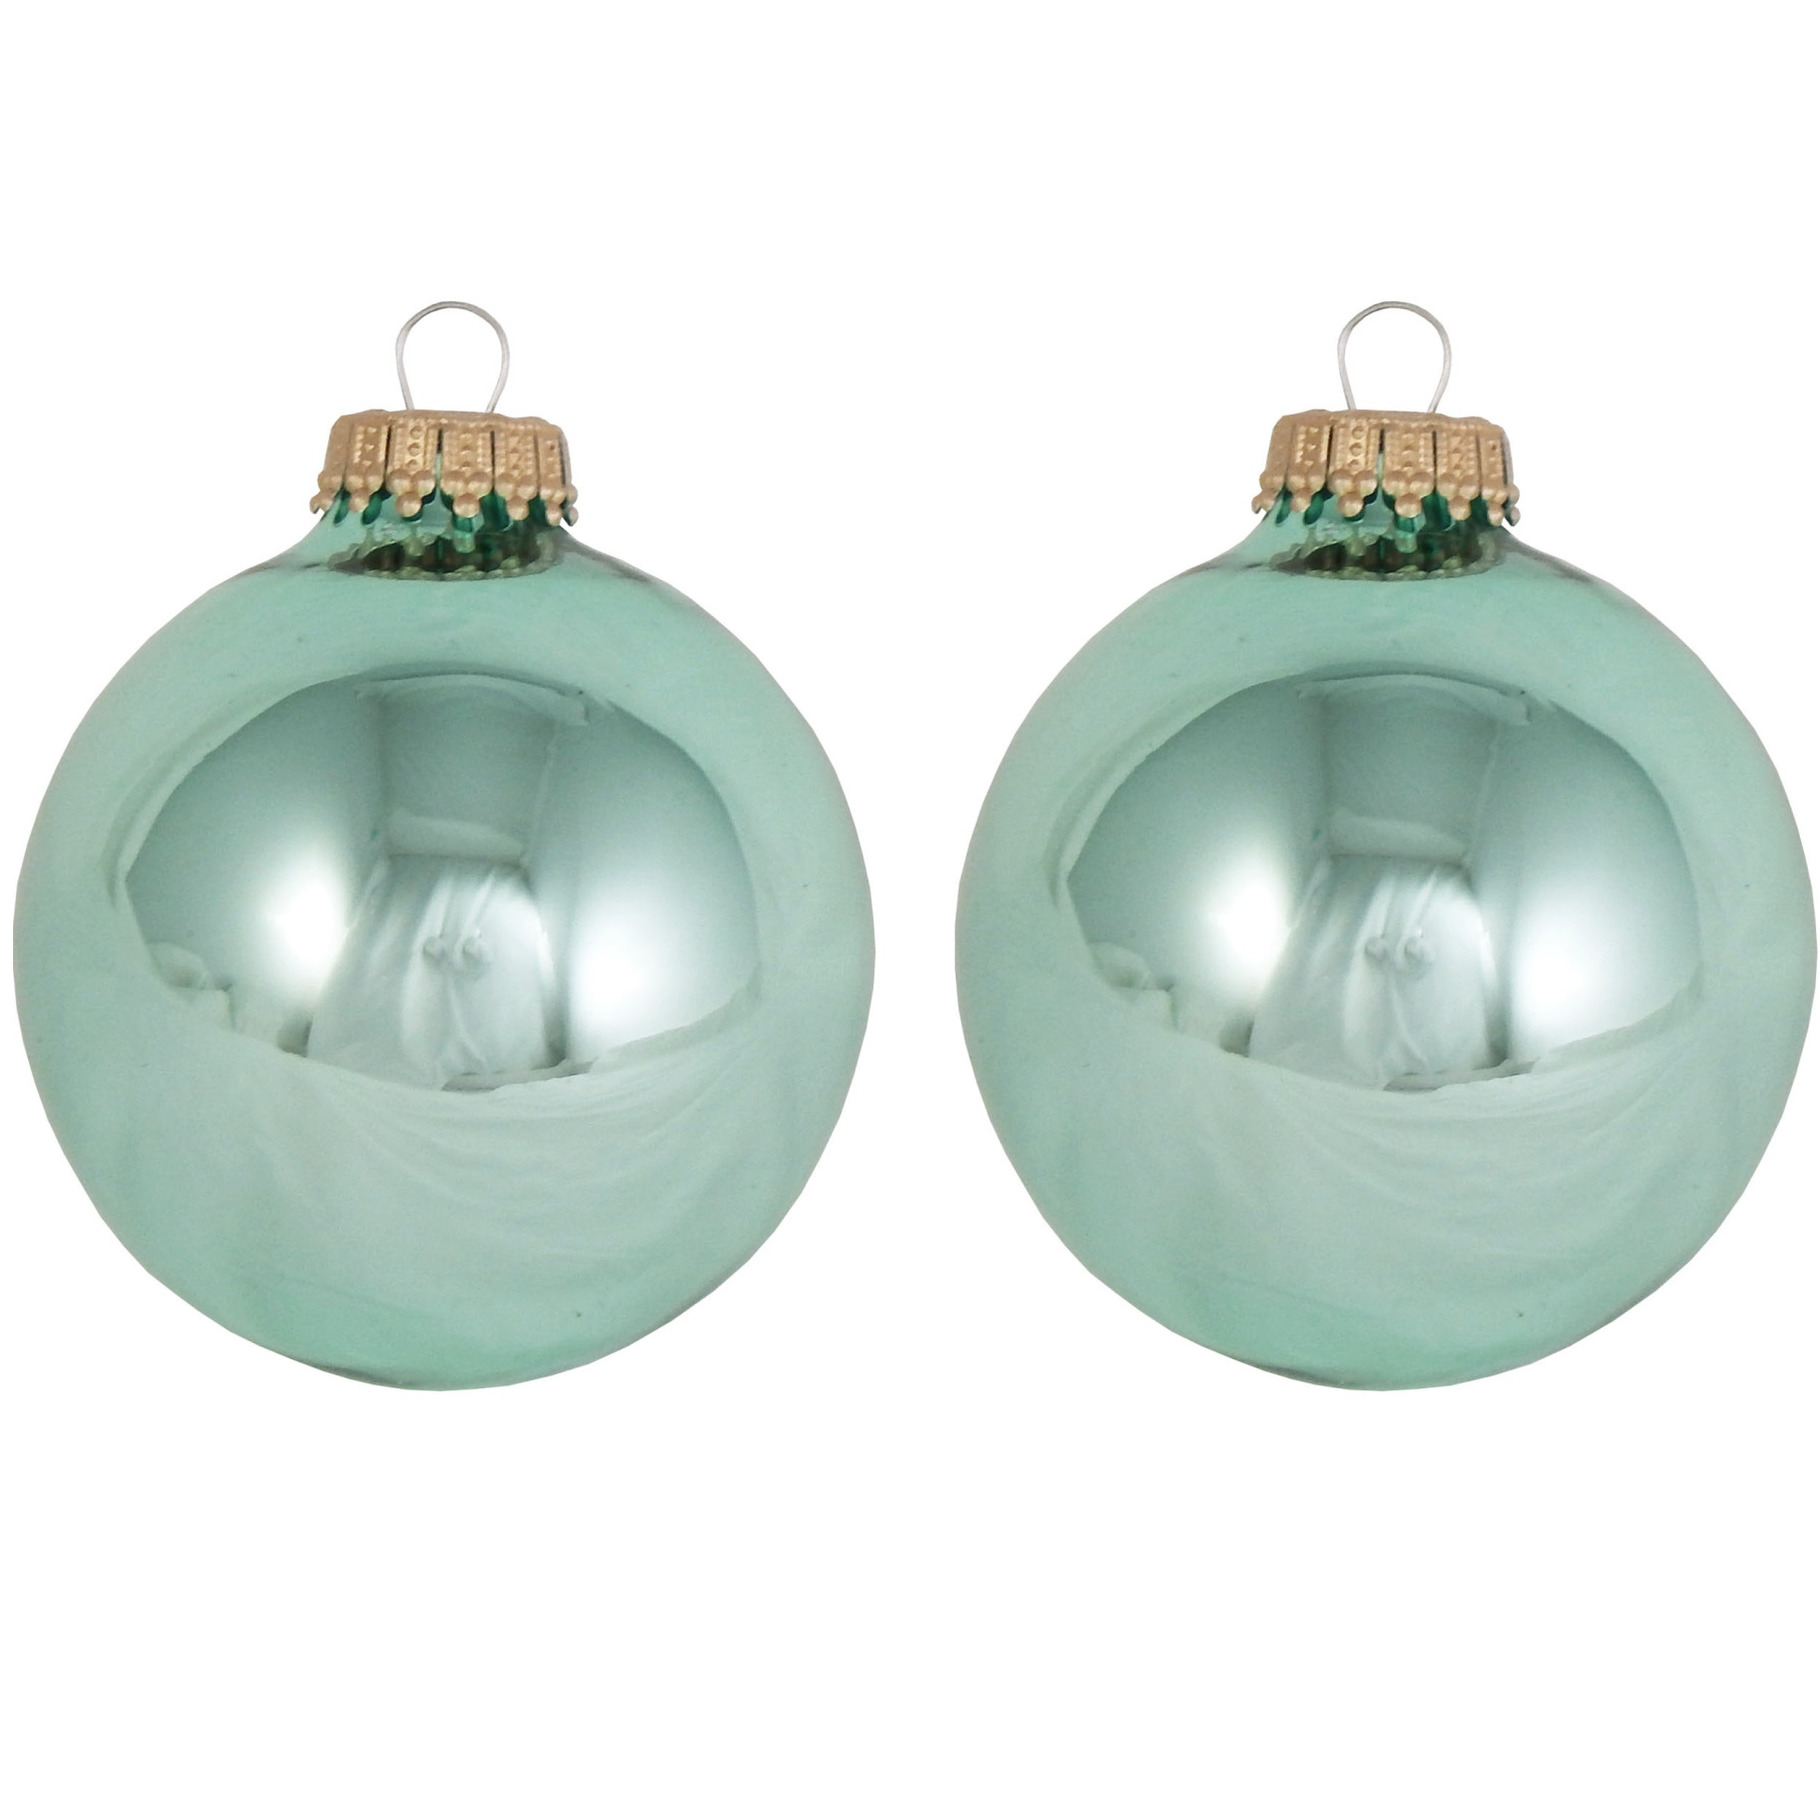 24x Seafoam groene glazen kerstballen glans 7 cm kerstboomversiering -